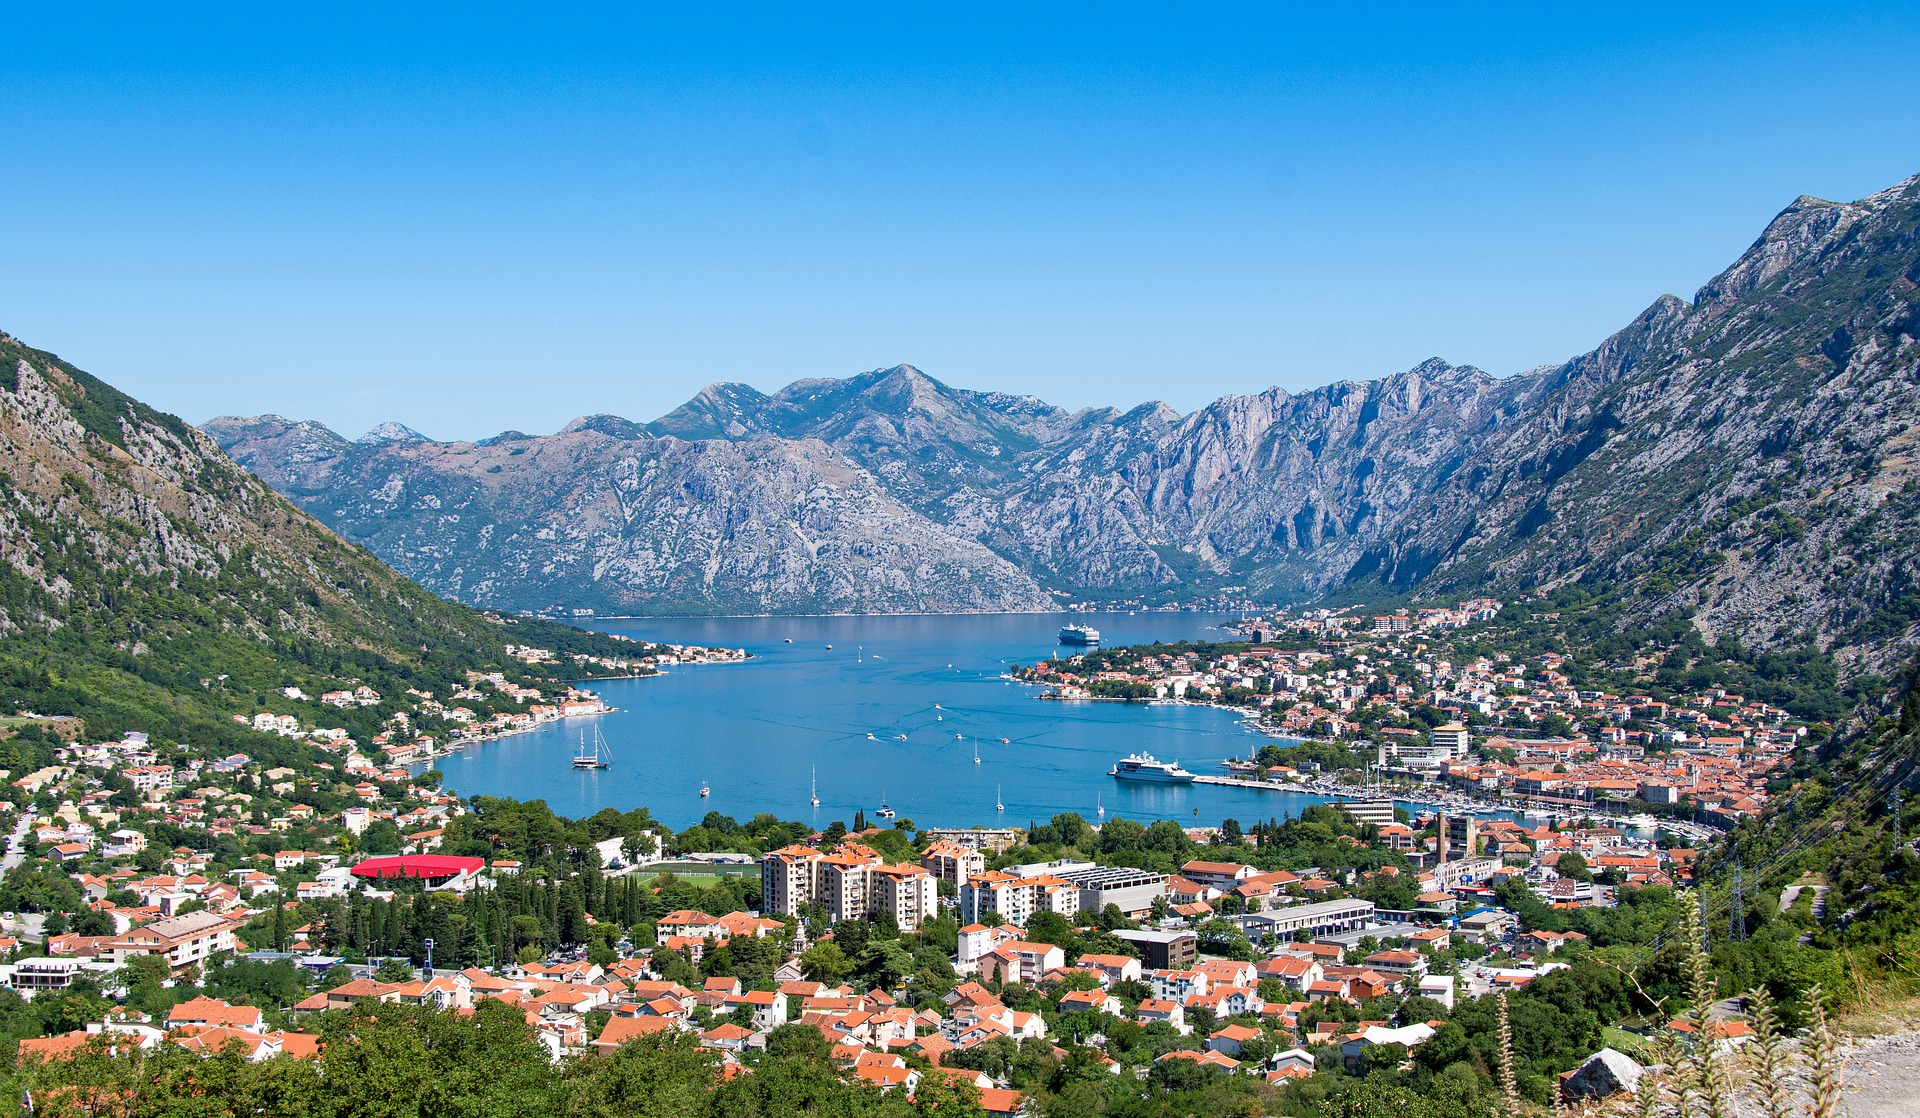 Албания или Черногория: сравниваем особенности отдыха в курортных странах